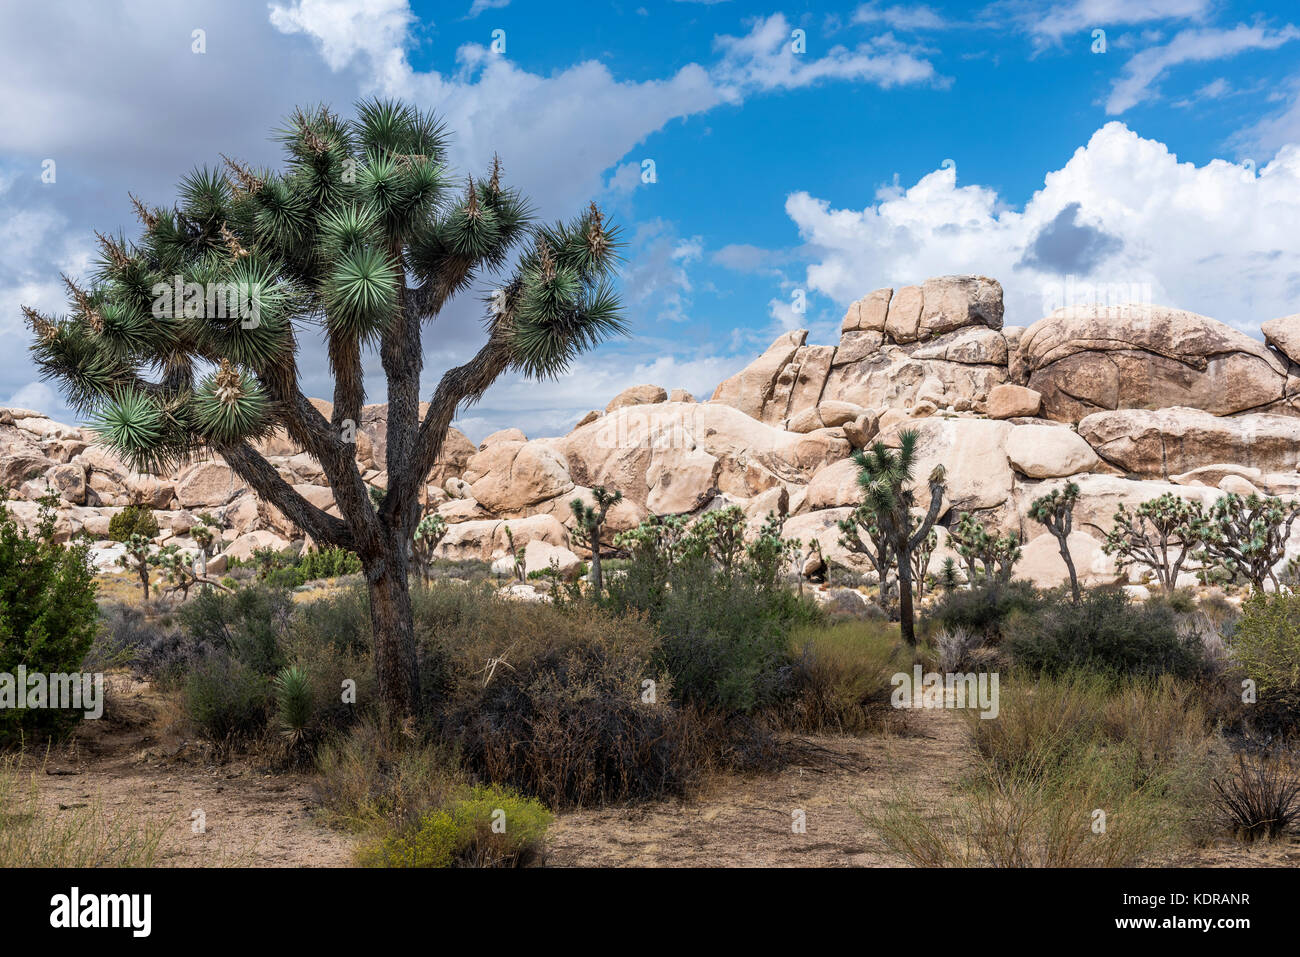 Ein großer Joshua-Baum umrahmt die zerklüfteten Felsformationen, die die Wüstenlandschaft umgeben. Stockfoto